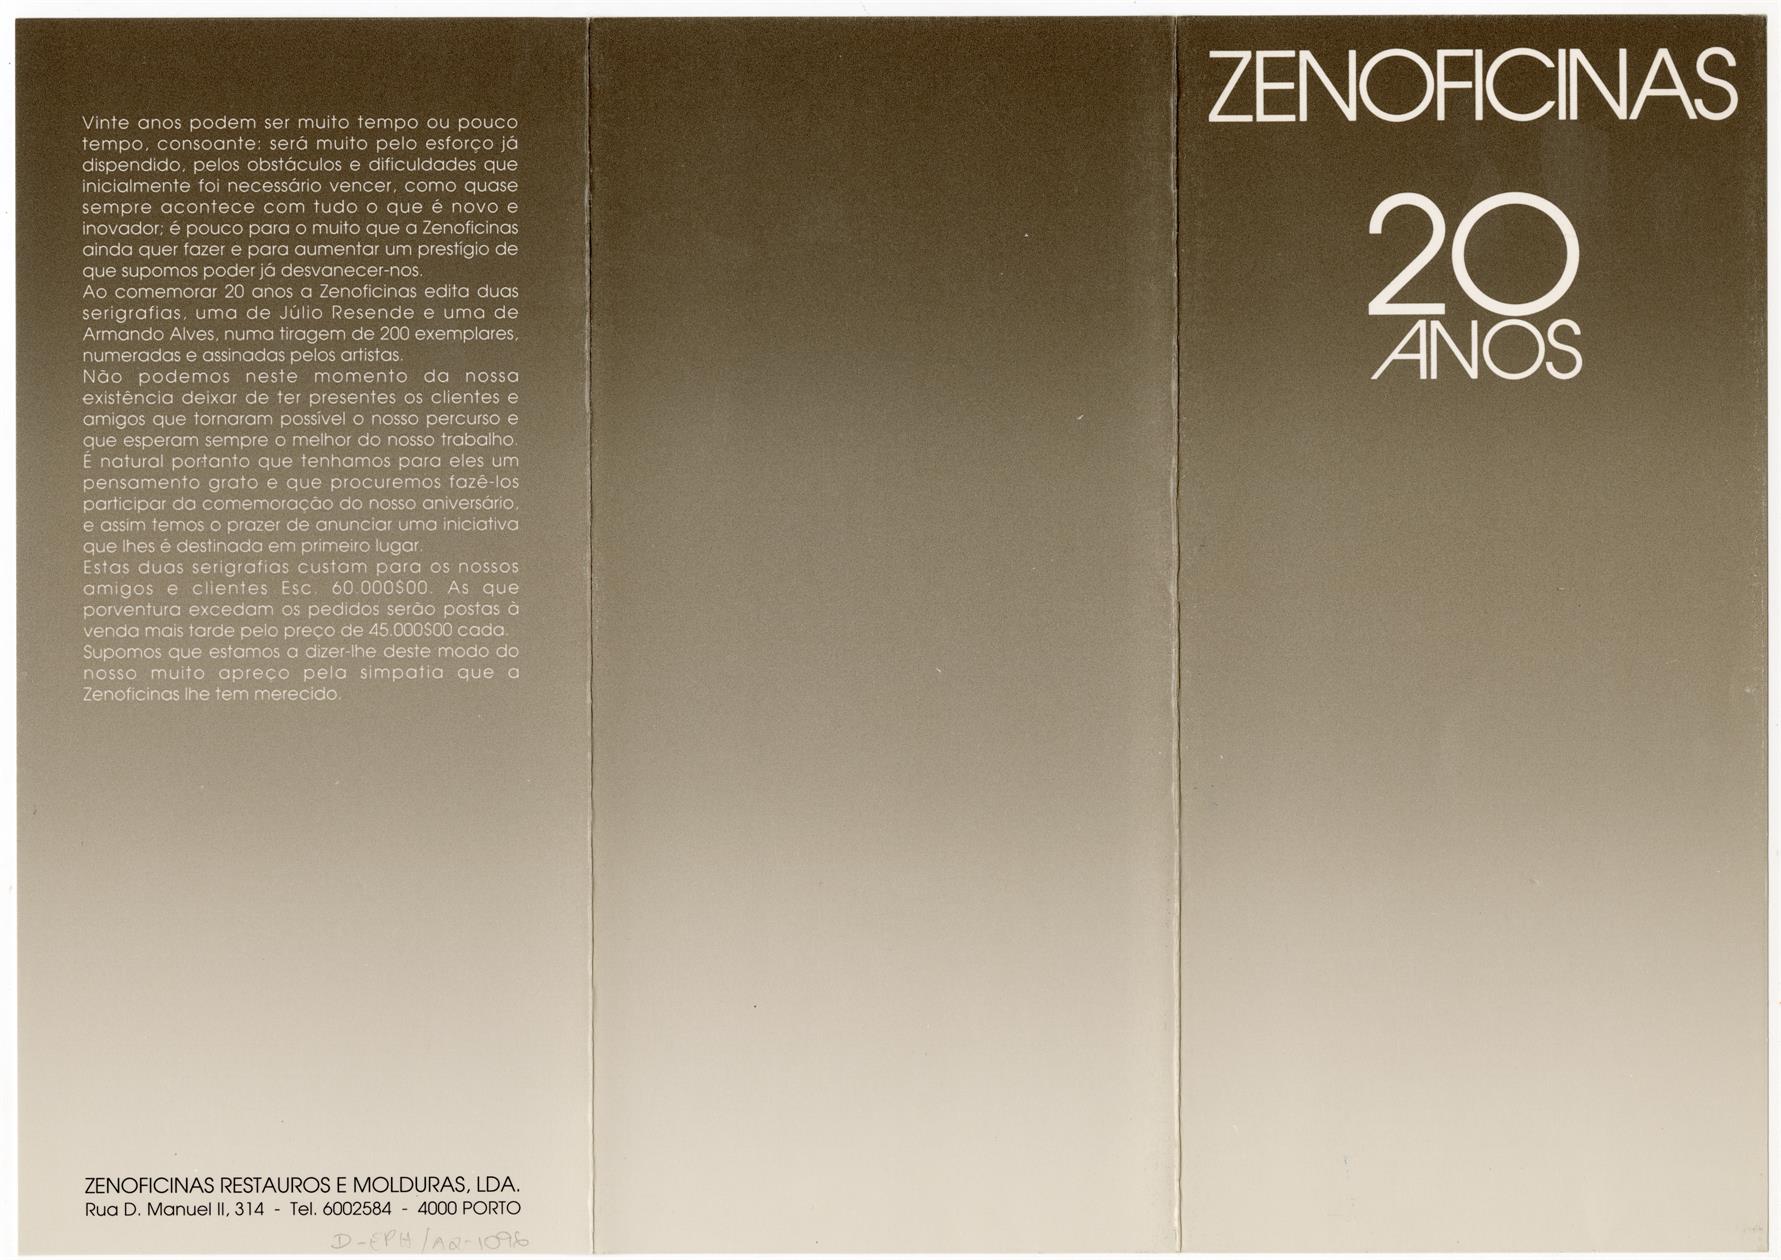 Zenoficinas 20 Anos